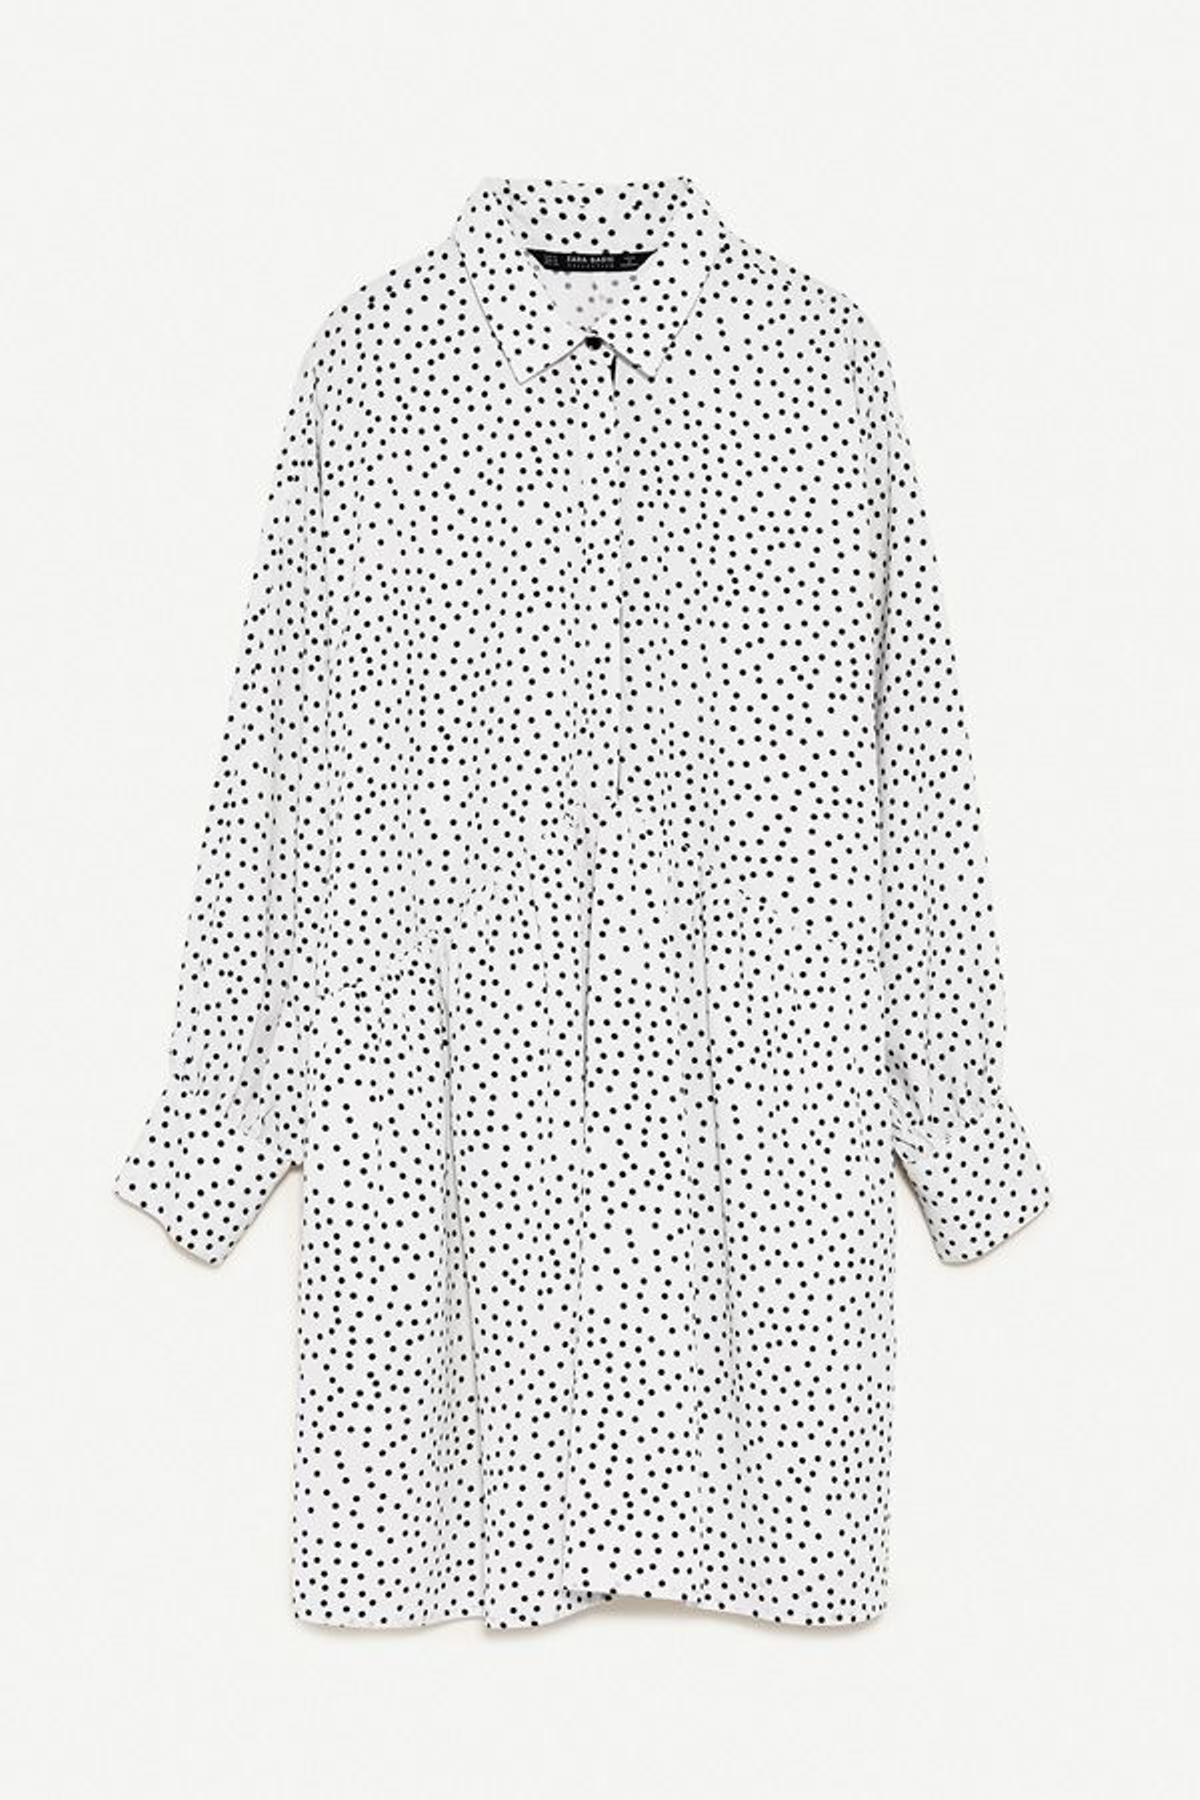 Vestidos camiseros de Zara en rebajas: de polka dots